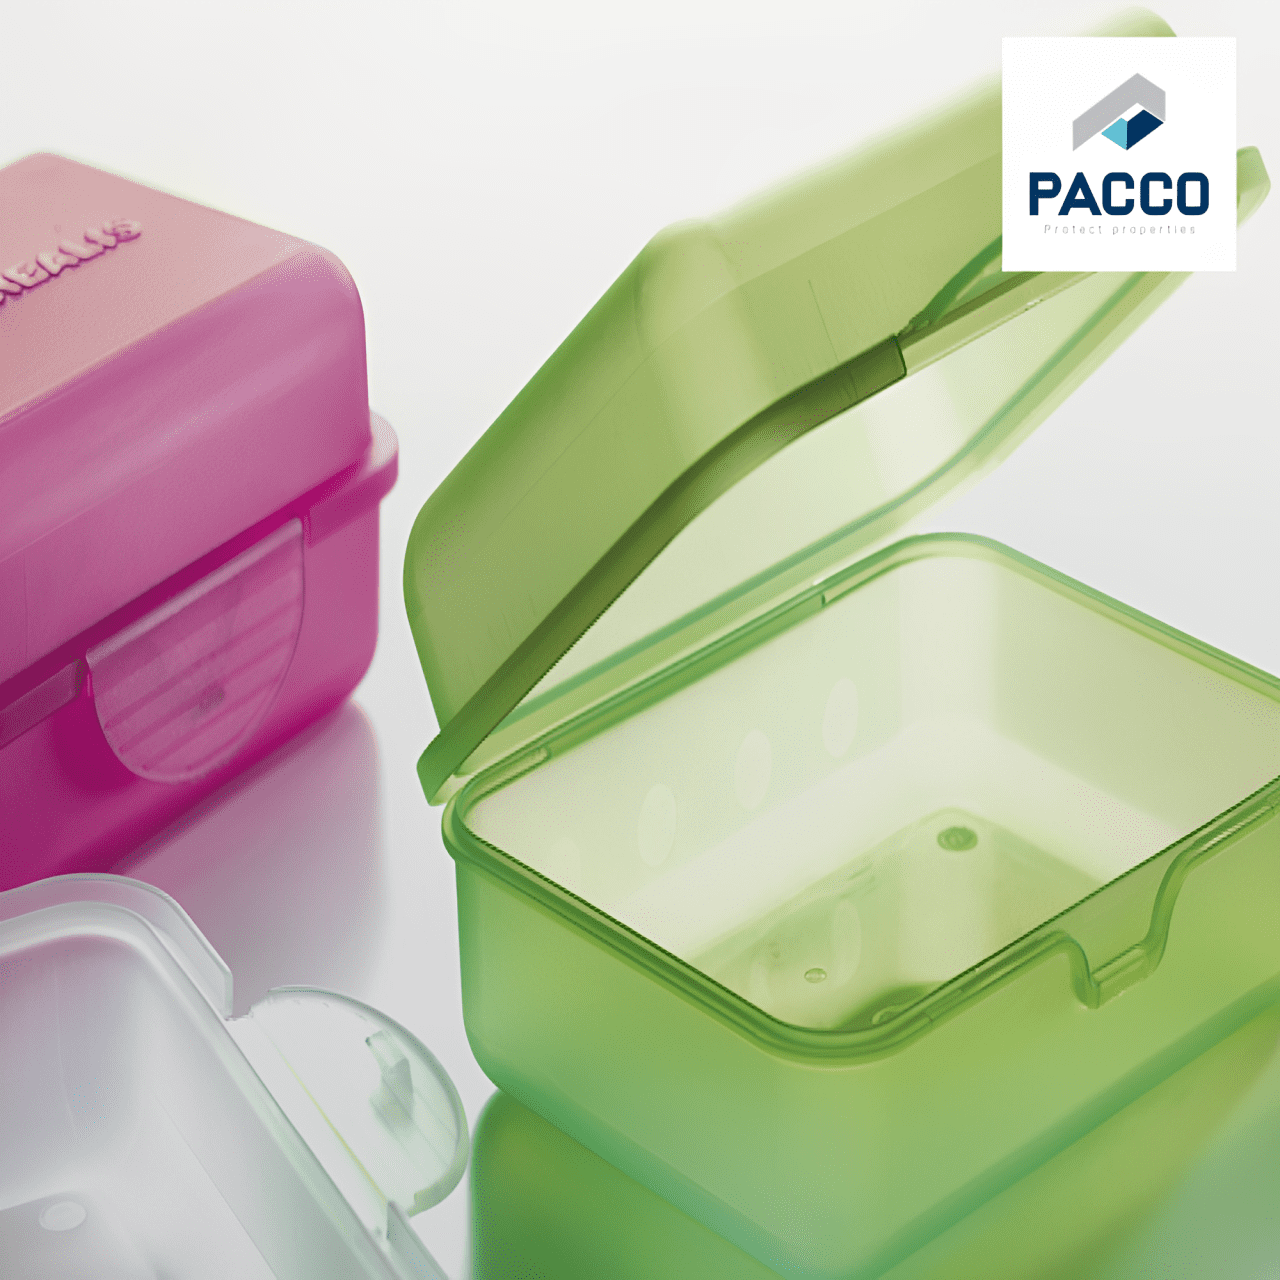 Nhựa pp được ứng dụng trong quá trình đóng gói, bao bì thực phẩm